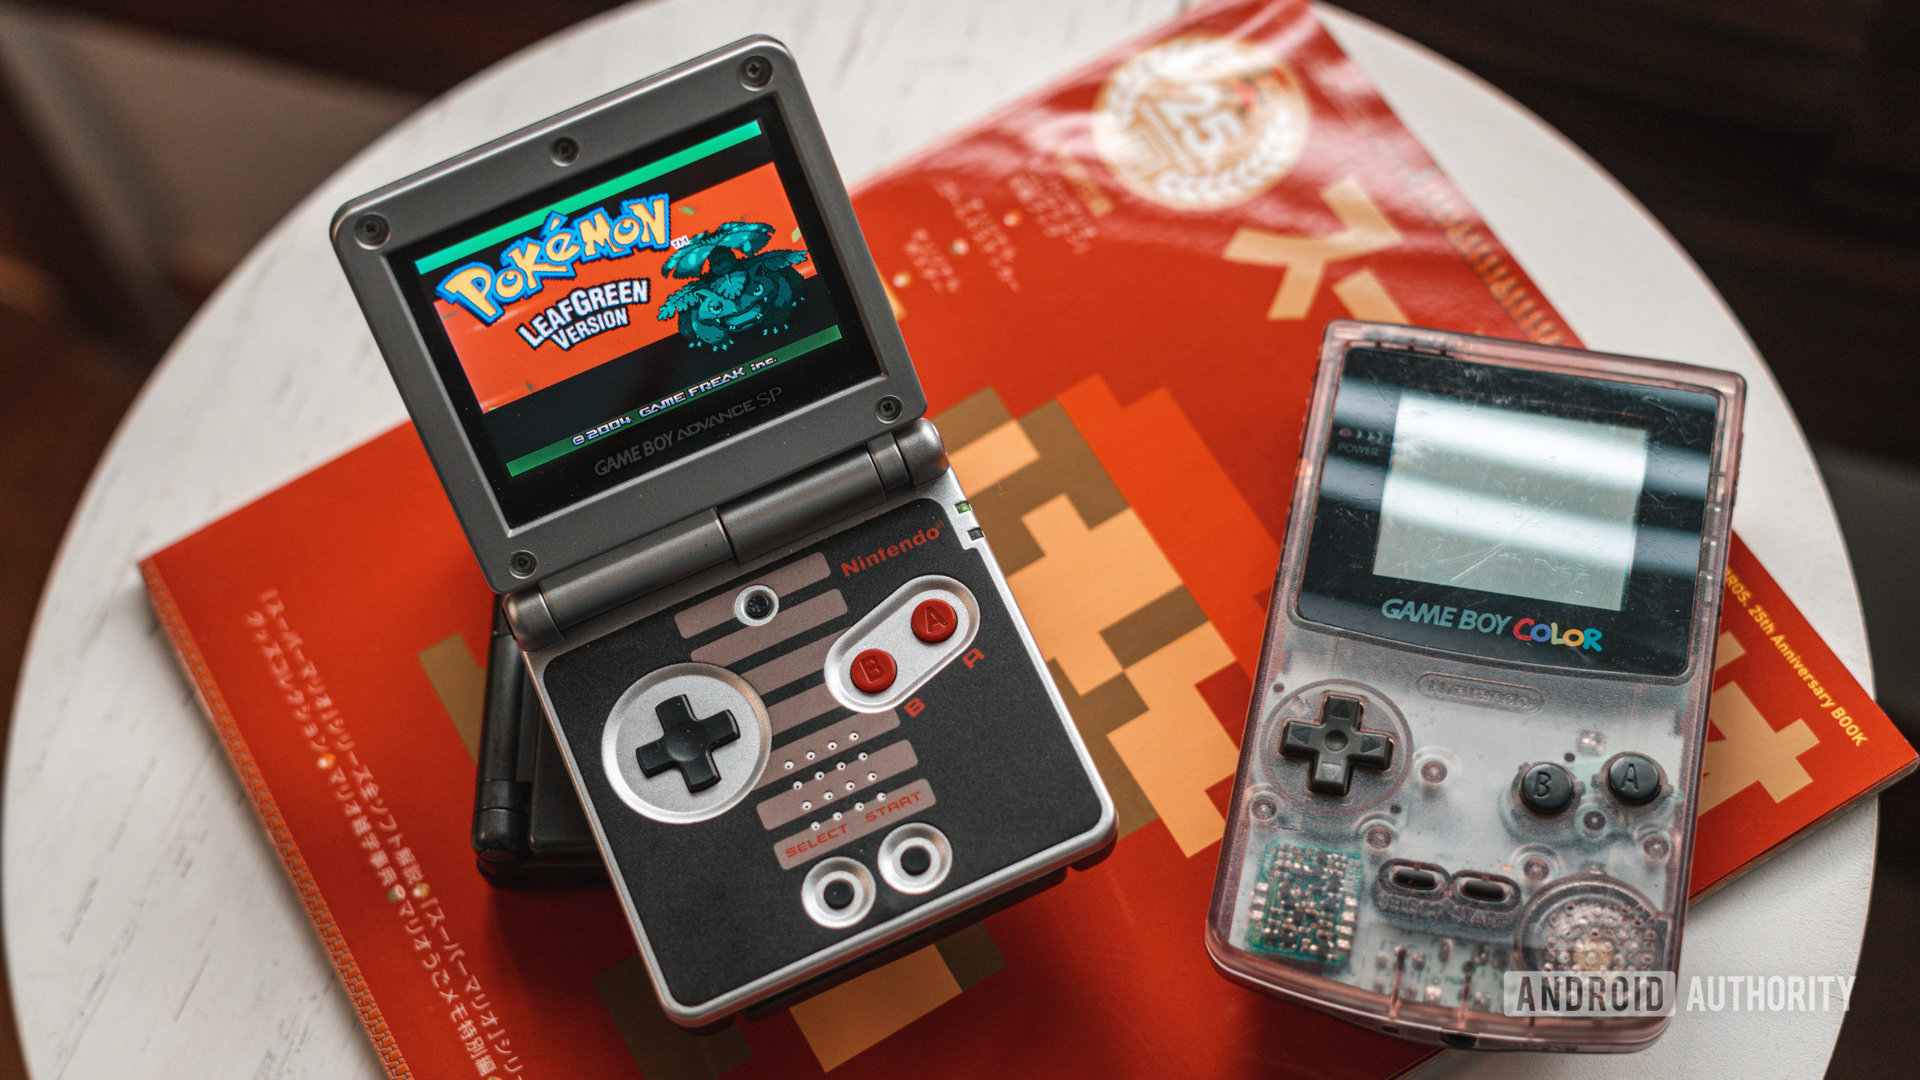 Game Boy Advance SP with Pokémon